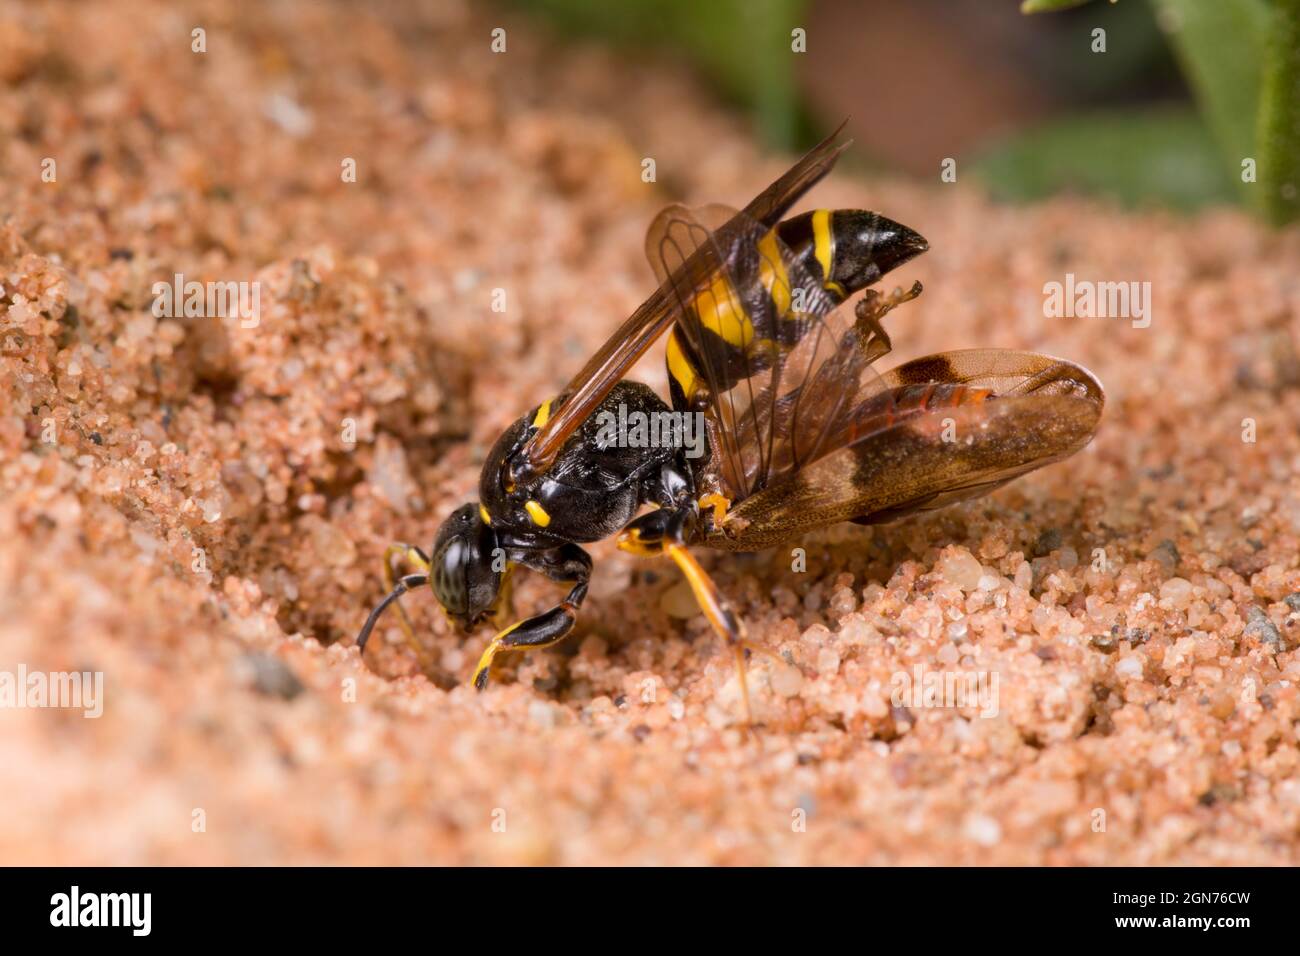 Digger Wasp Gorytes laticinctus femelle entrant dans son nid dans une fosse de sable transportant des proies. Powys, pays de Galles. Août. Banque D'Images